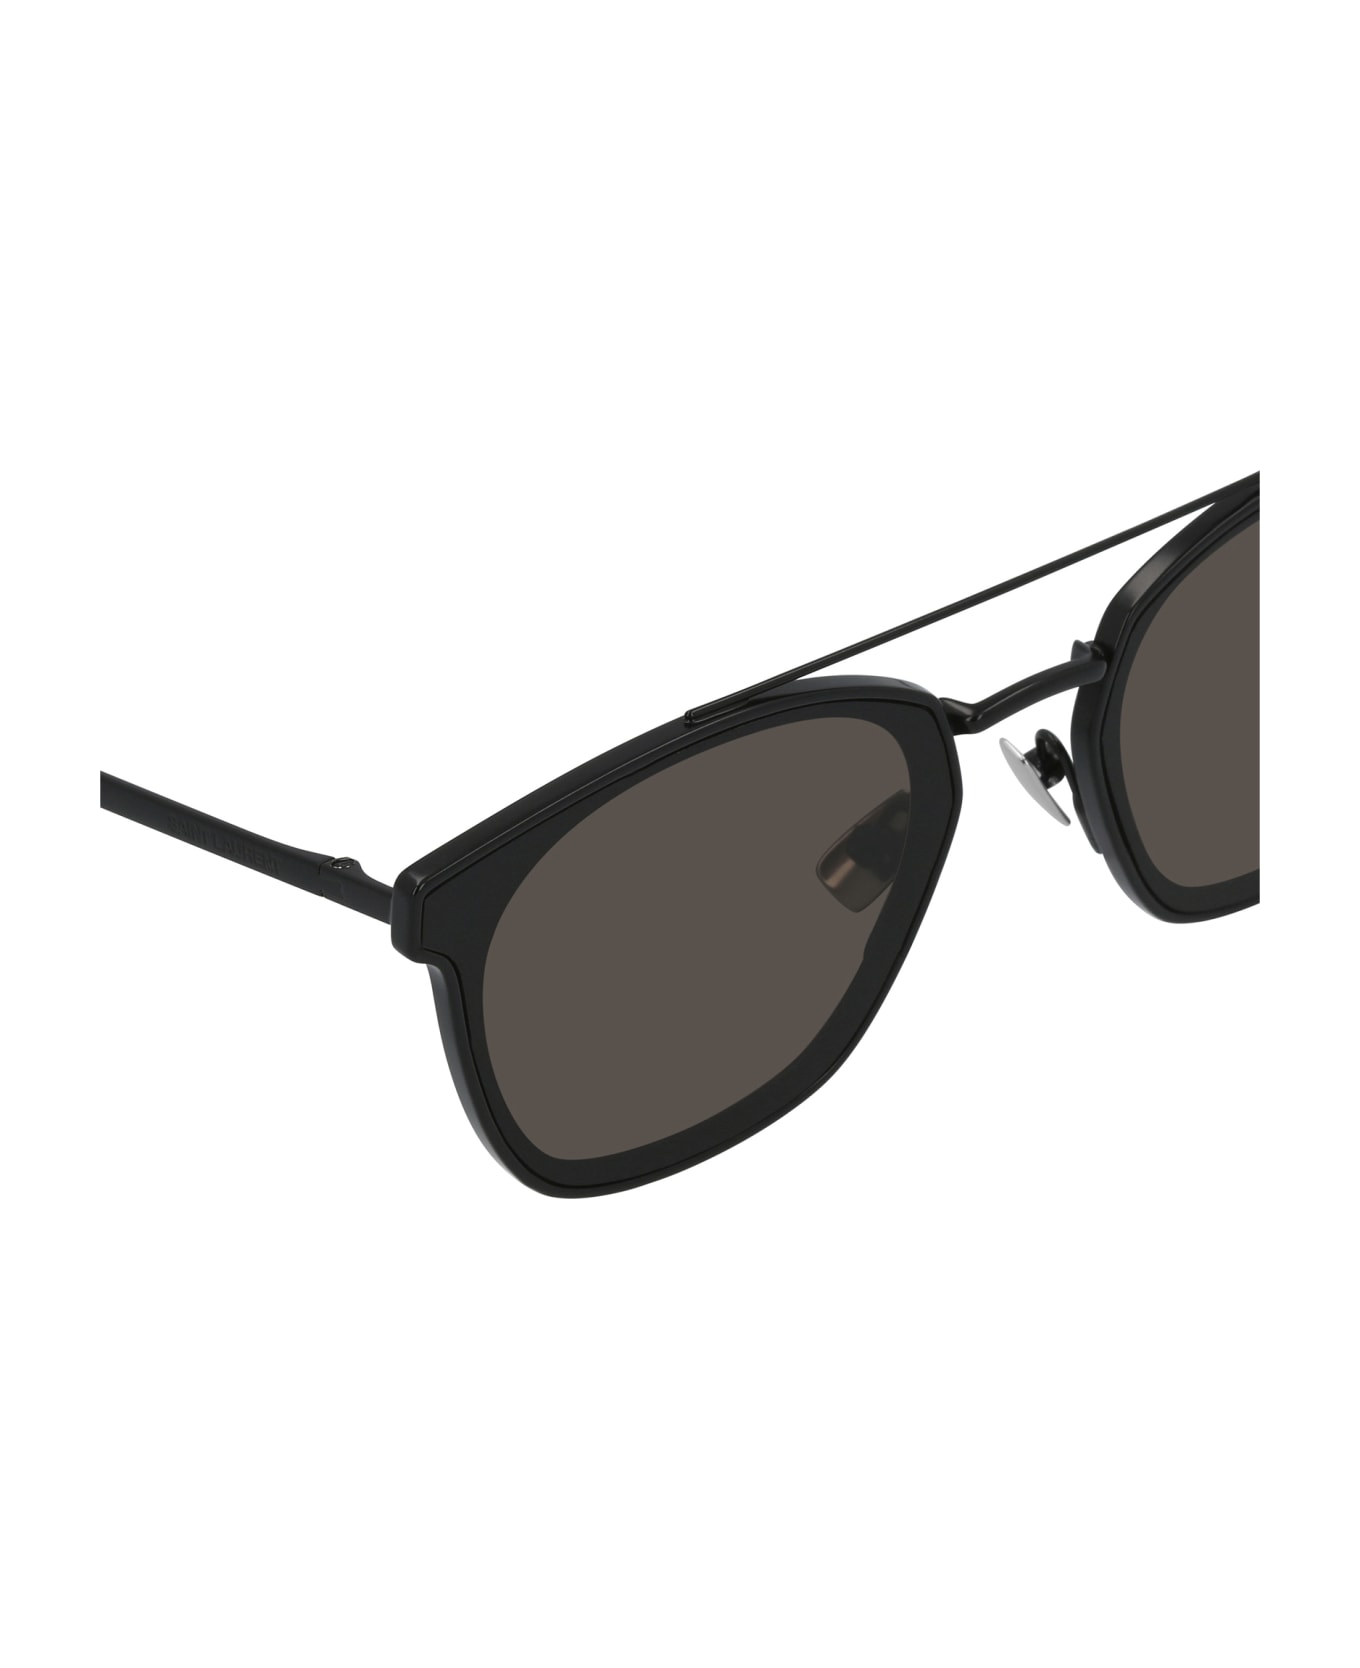 Saint Laurent Eyewear Sl 28 Metal Black Sunglasses - Black